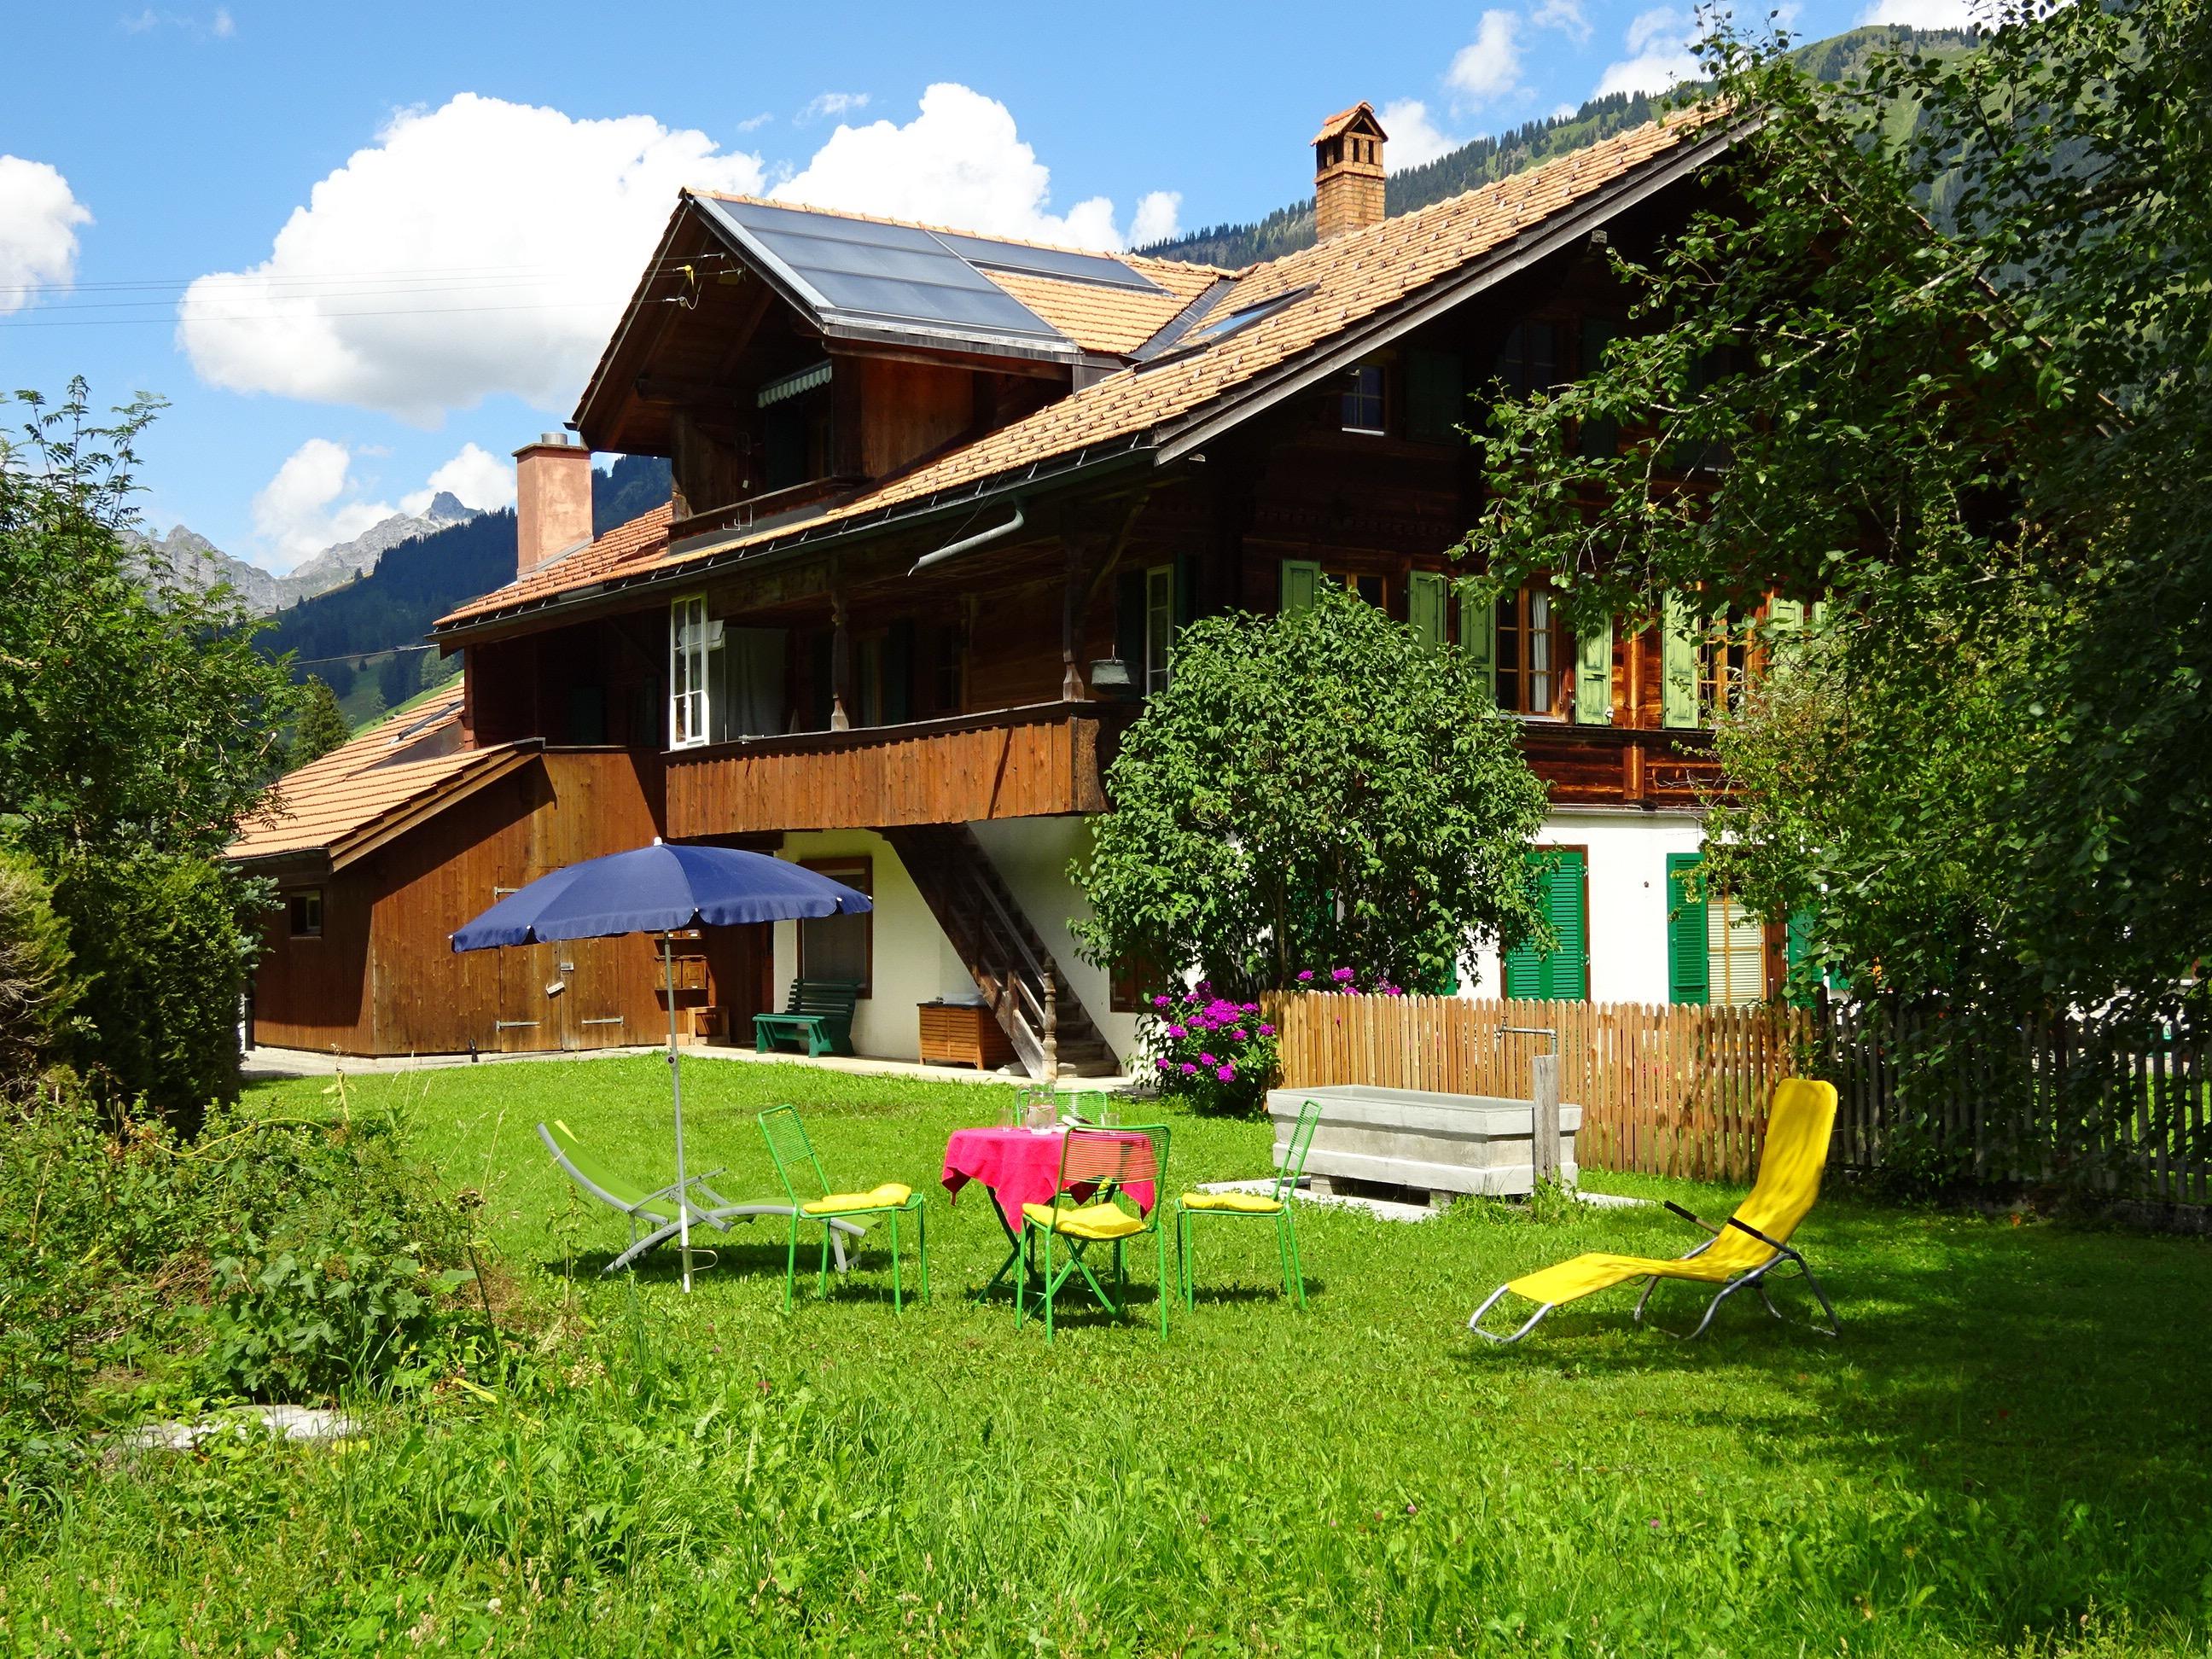 Lischenhaus - Strubel 5-Bett-Wohnung Ferienwohnung in der Schweiz